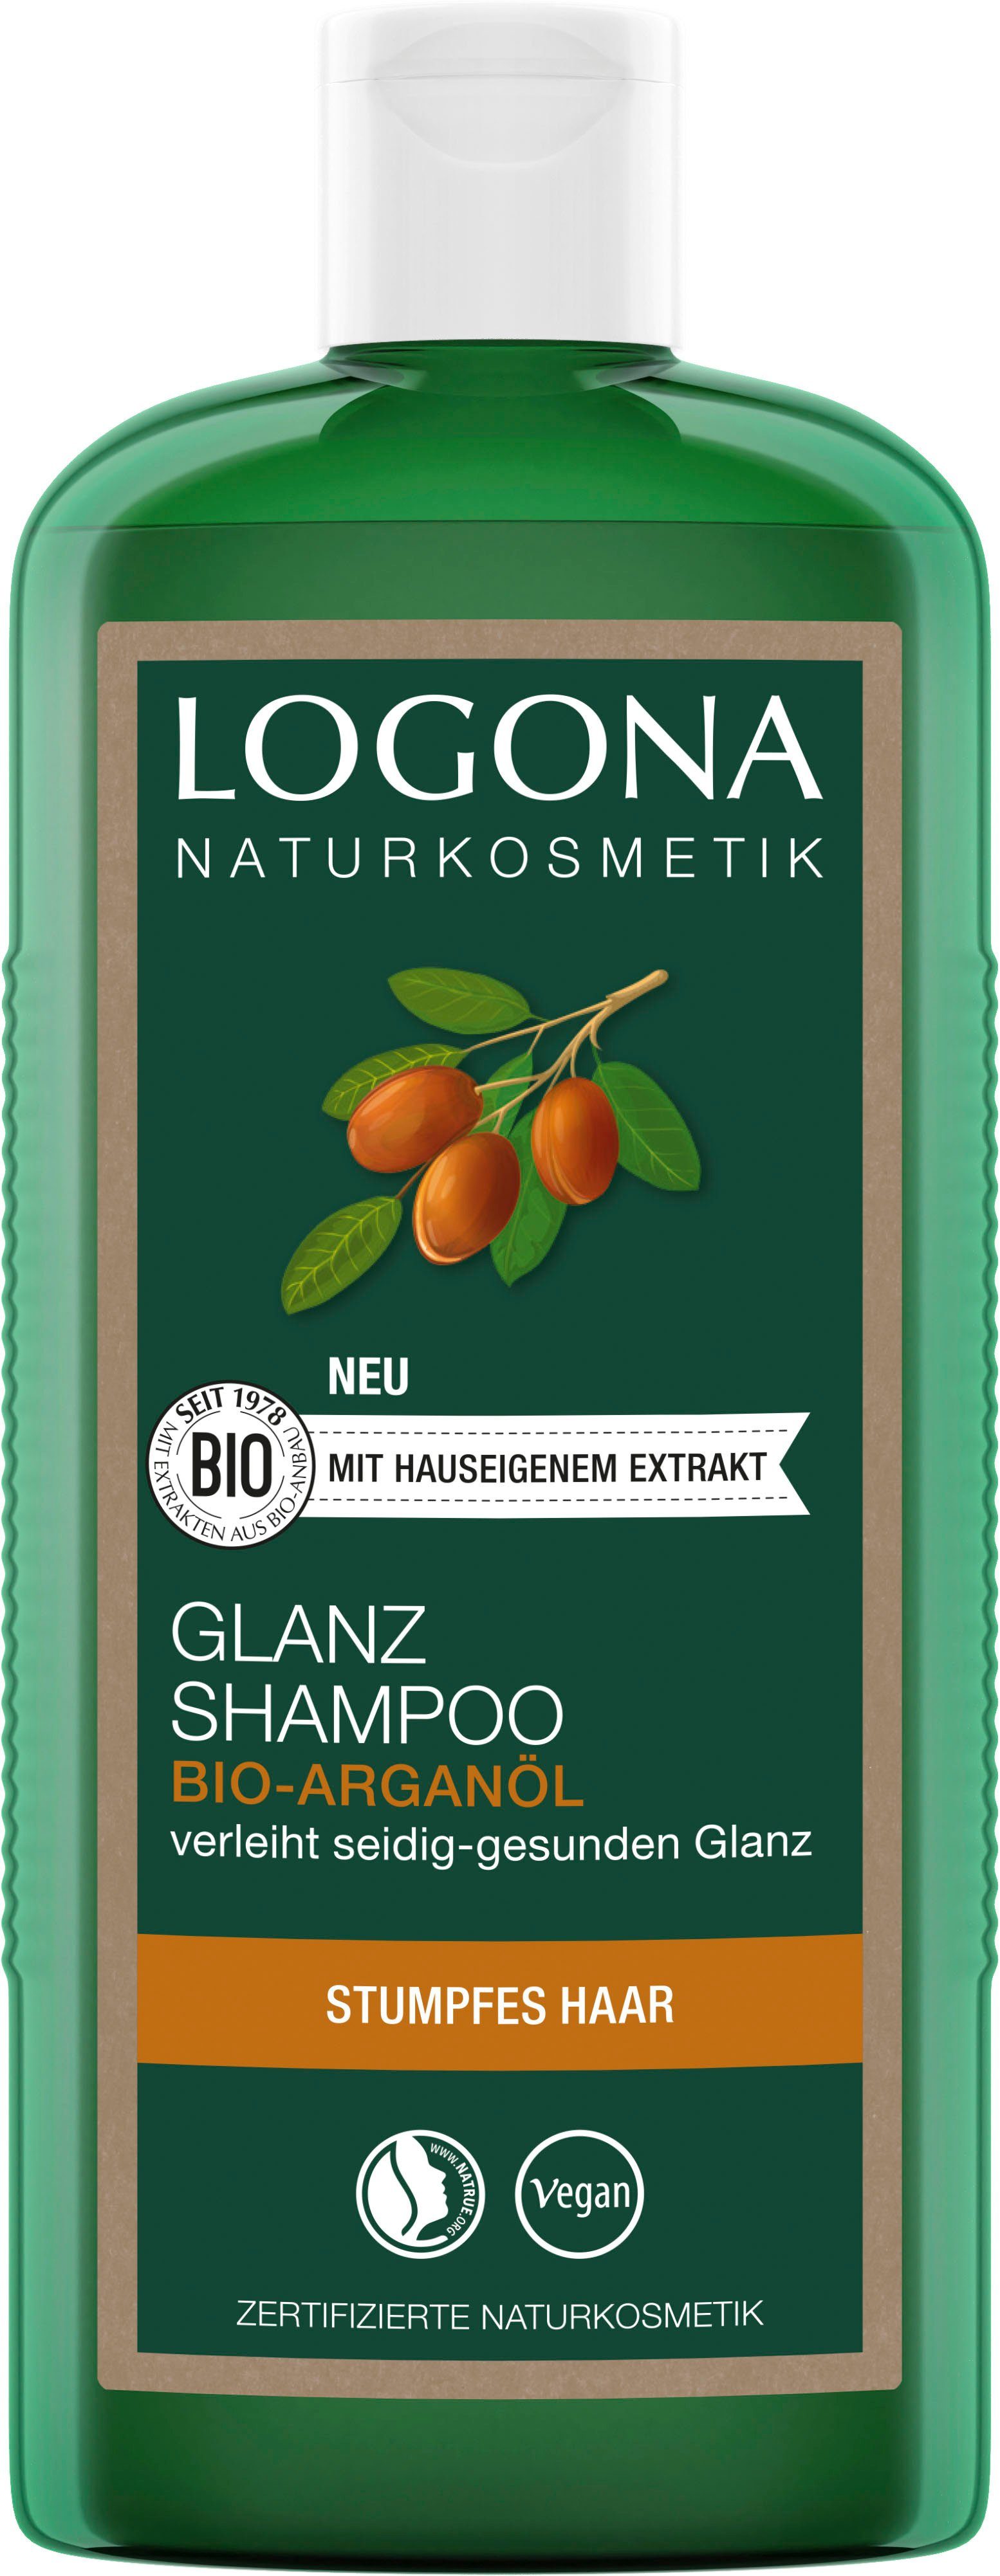 LOGONA Haarshampoo Logona Glanz Shampoo Bio-Arganöl | Haarshampoos